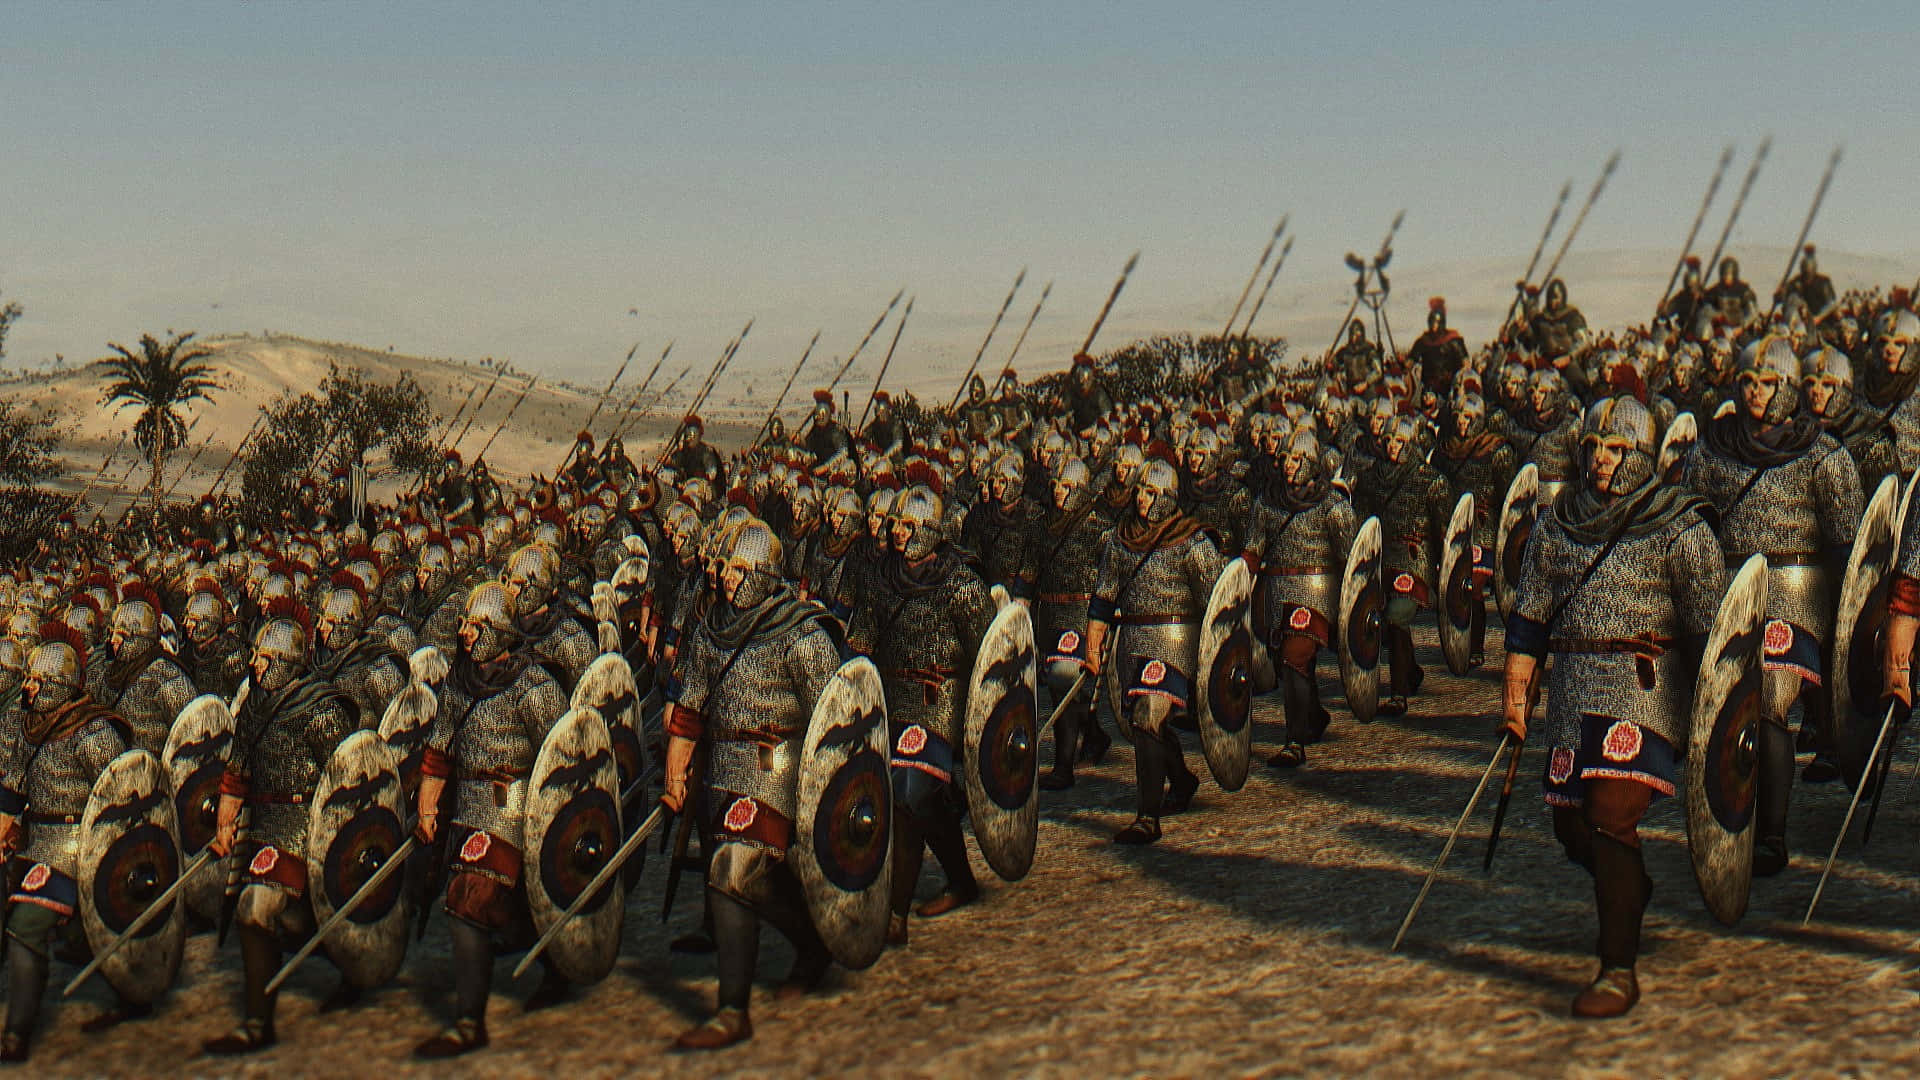 Bedste Total War Rome 2 baggrund øde hinterland